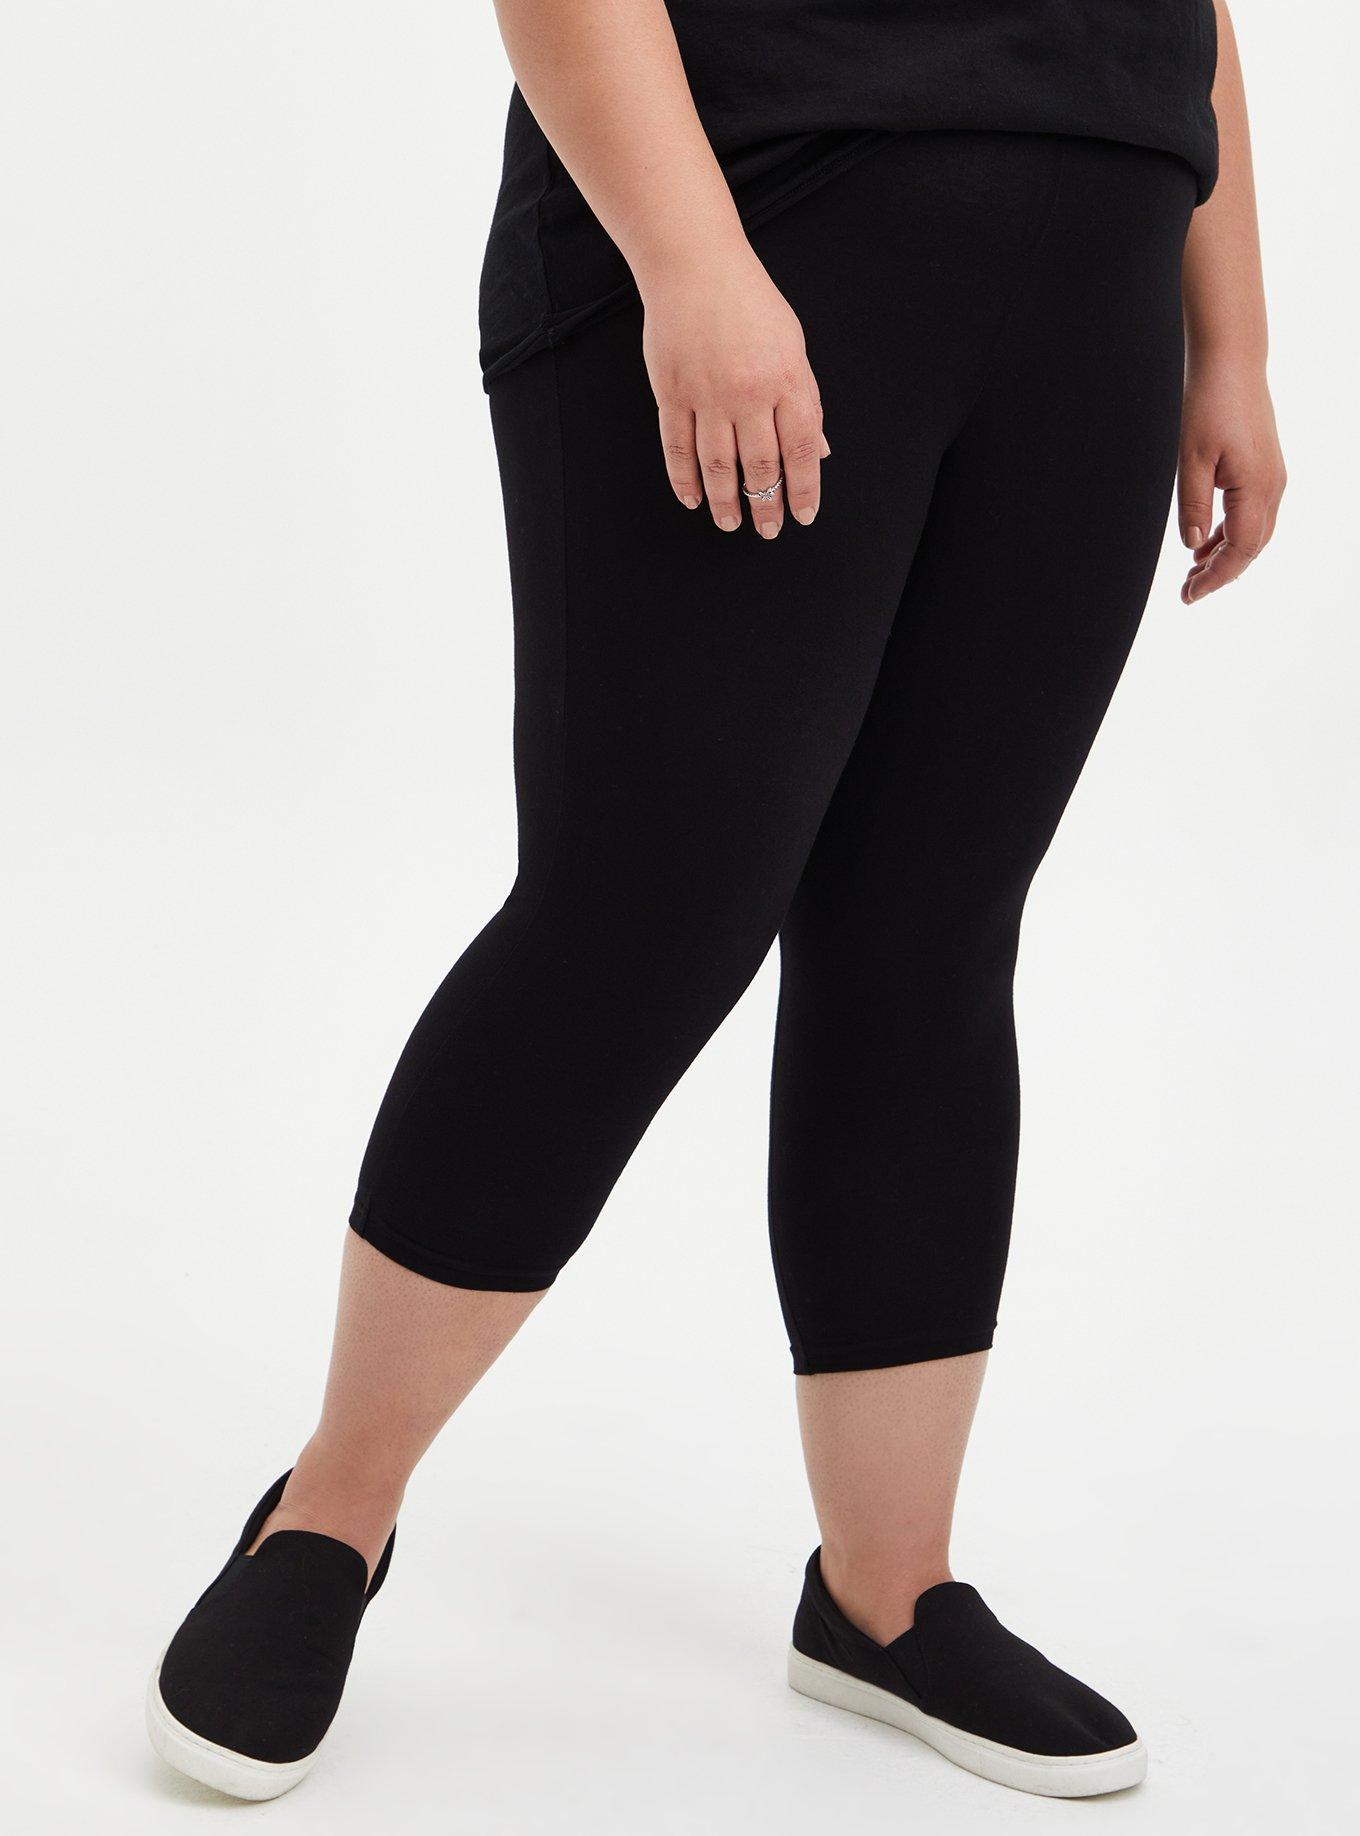 torrid premium leggings size 4x black ankle length 2packk